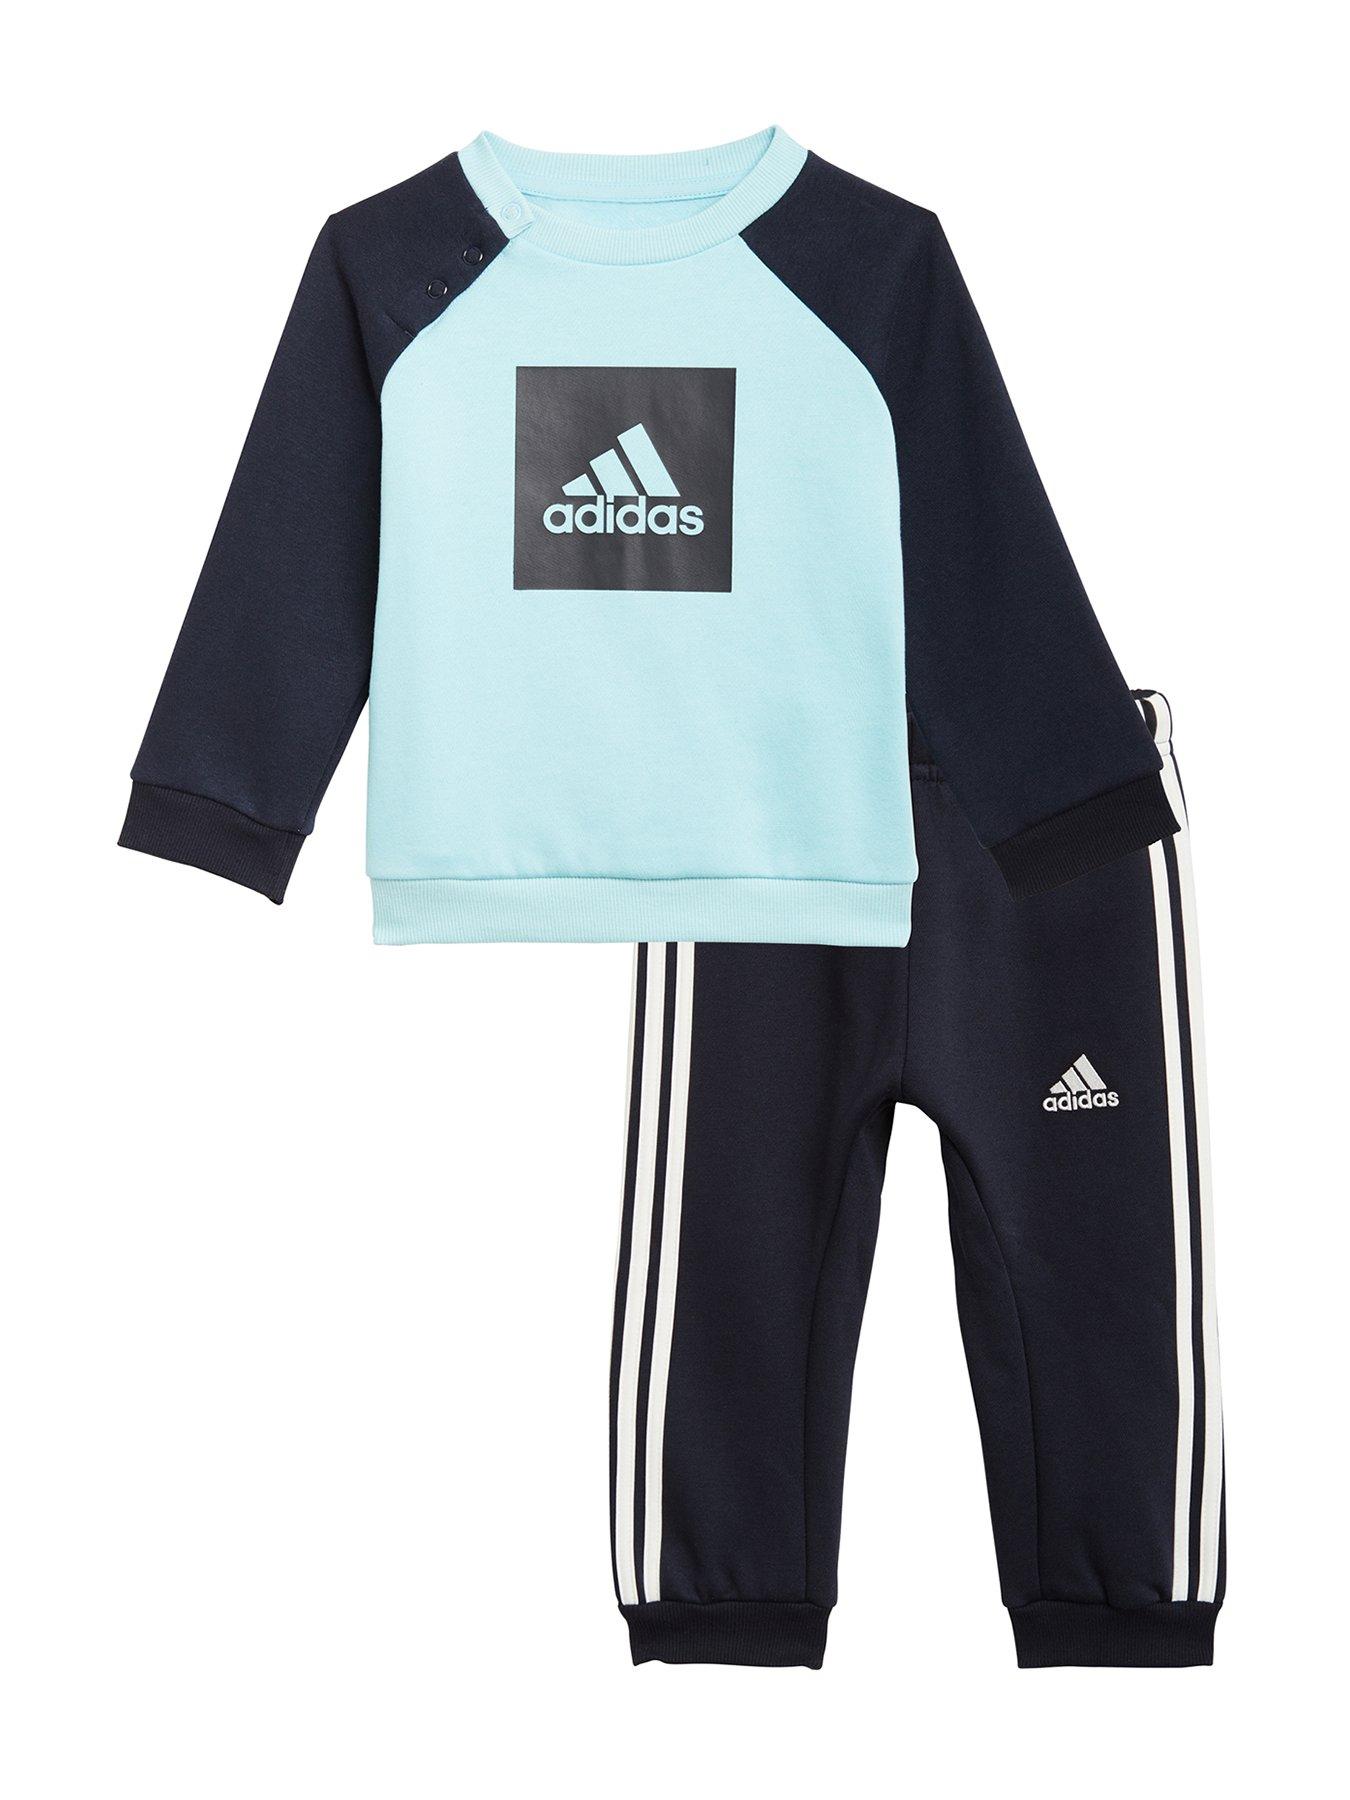 adidas Baby Clothes | Baby Girls \u0026 Boys 